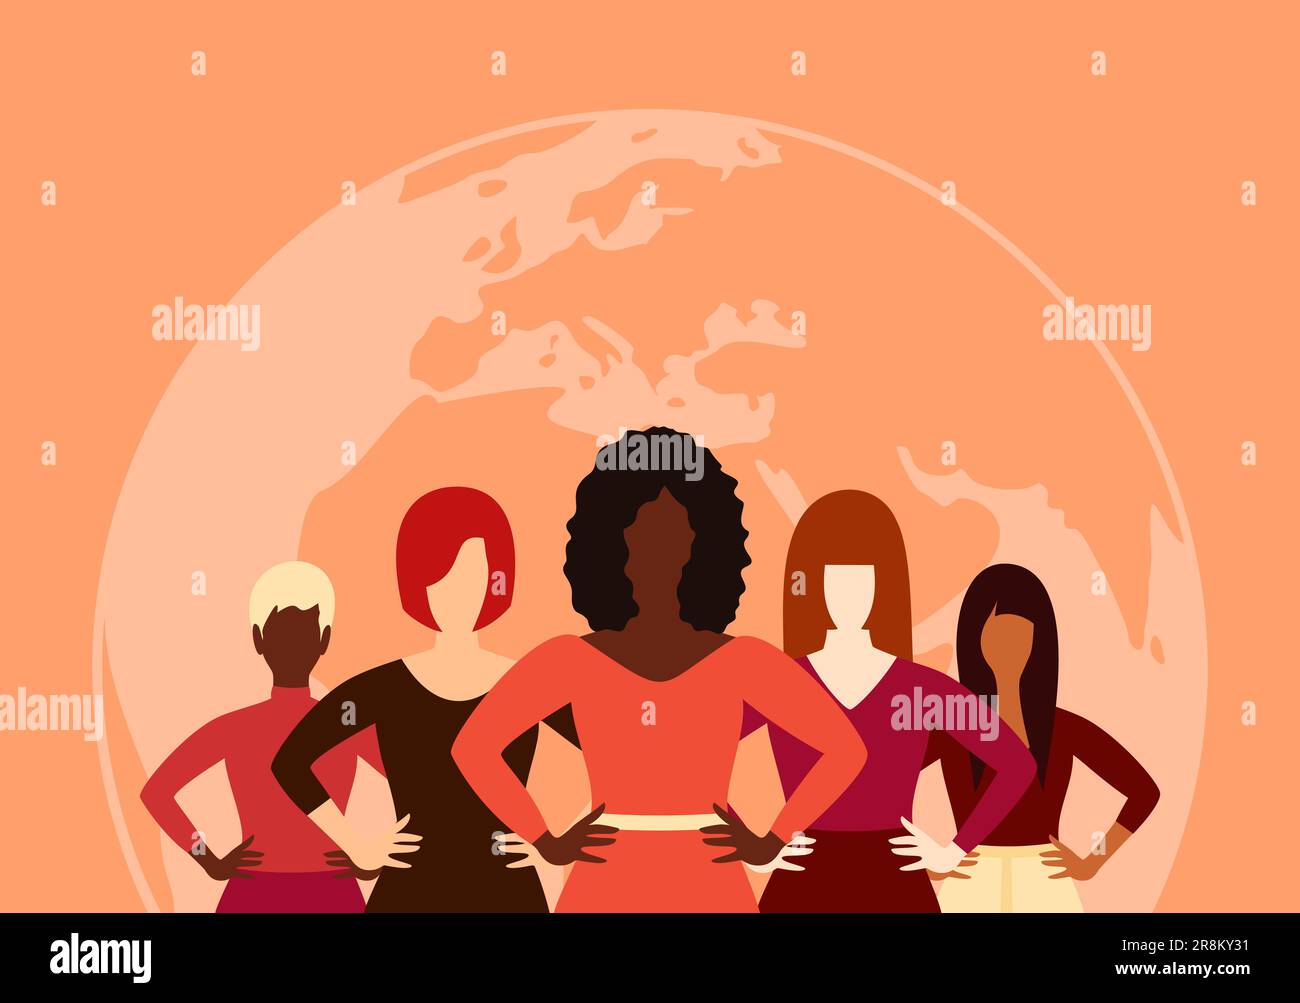 Frauen verschiedener ethnischer Gruppen, die im Hintergrund der Erde zusammenstehen. Vektordarstellung in flacher Form Stock Vektor